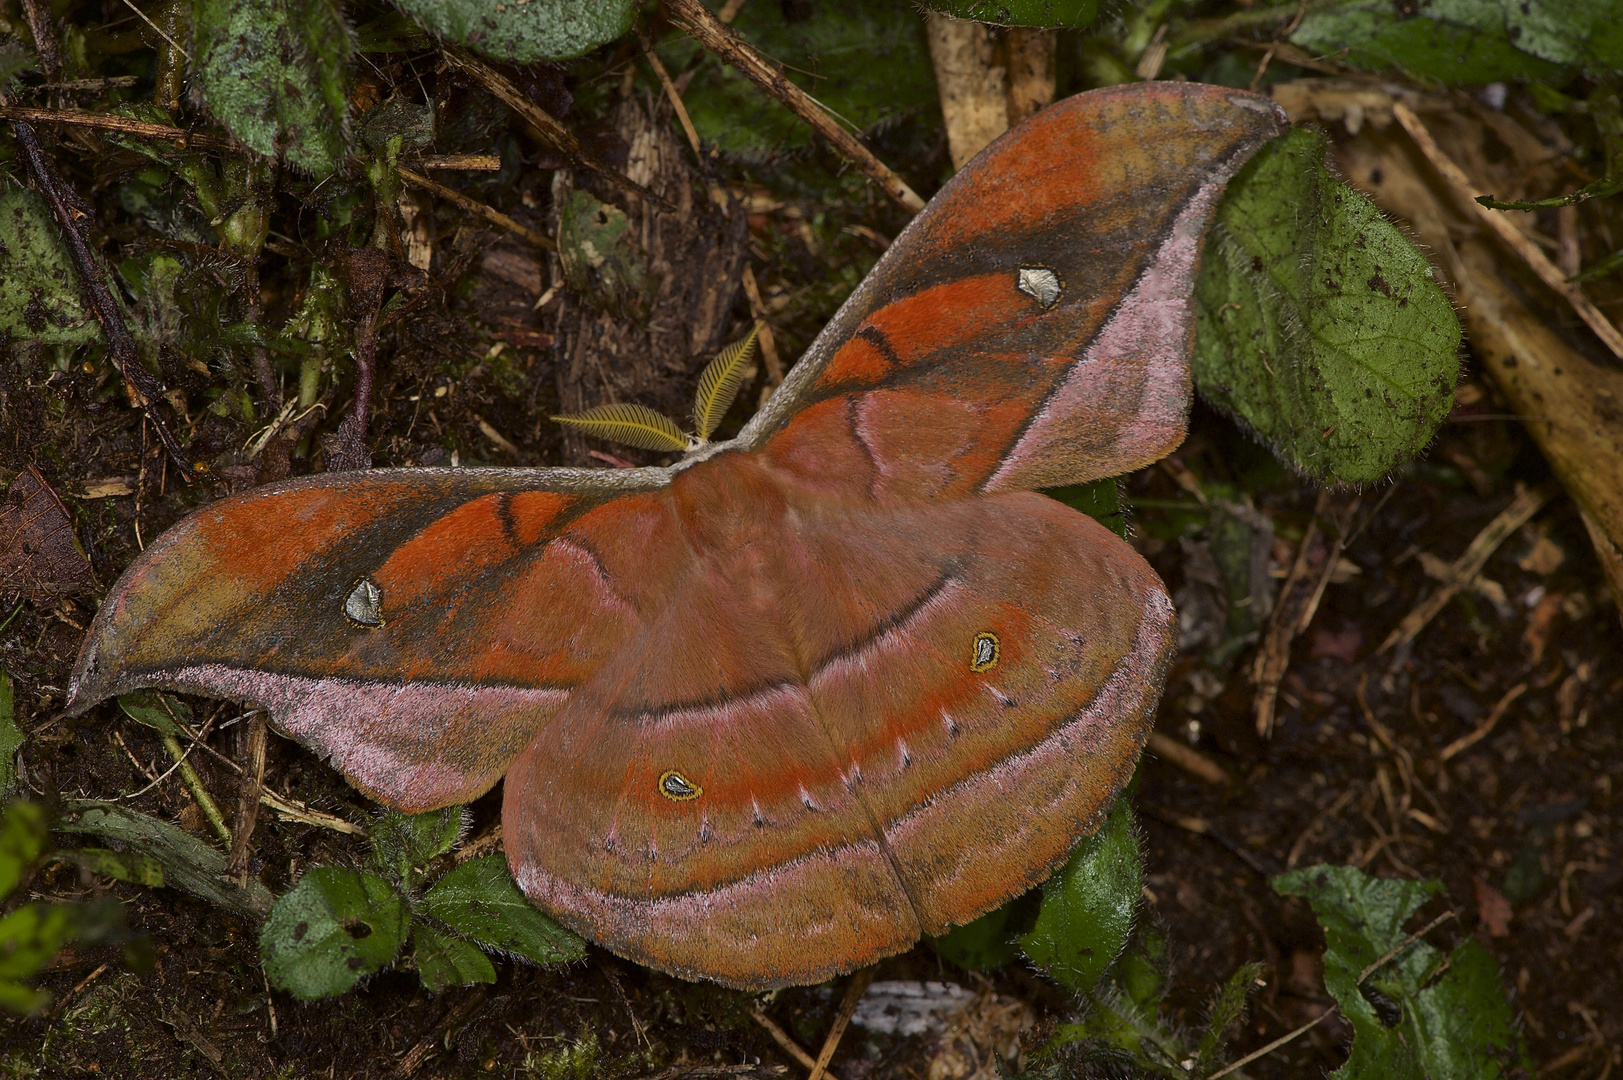   Ein großer Nachtfalter,Saturniidae,Copaxa andescens aus dem Nebelwald von Peru